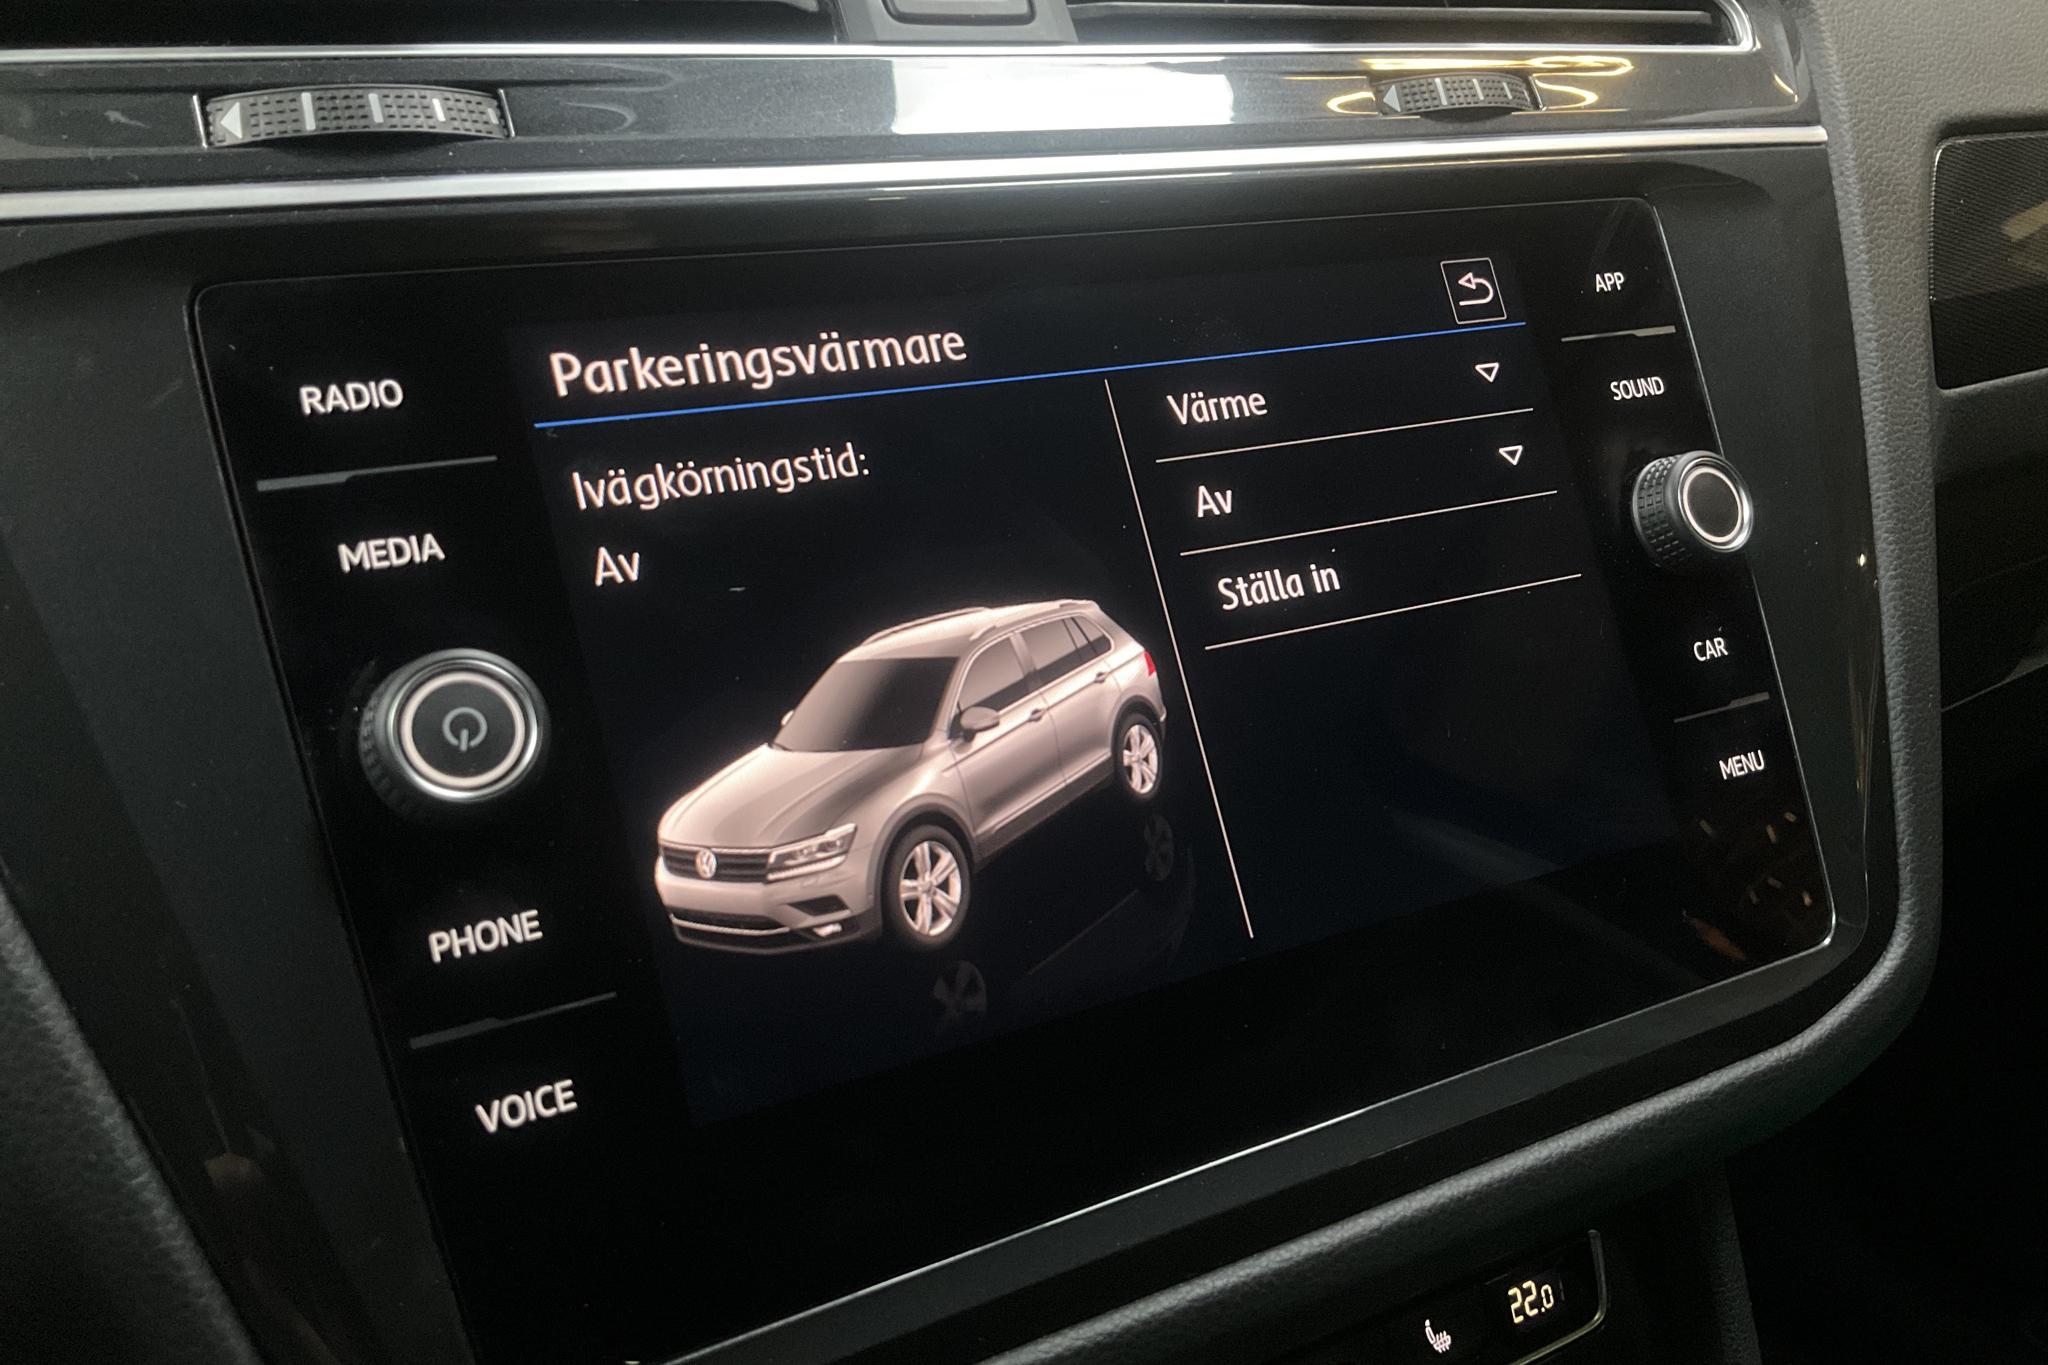 VW Tiguan 2.0 TDI 4MOTION (190hk) - 11 508 mil - Automat - blå - 2019